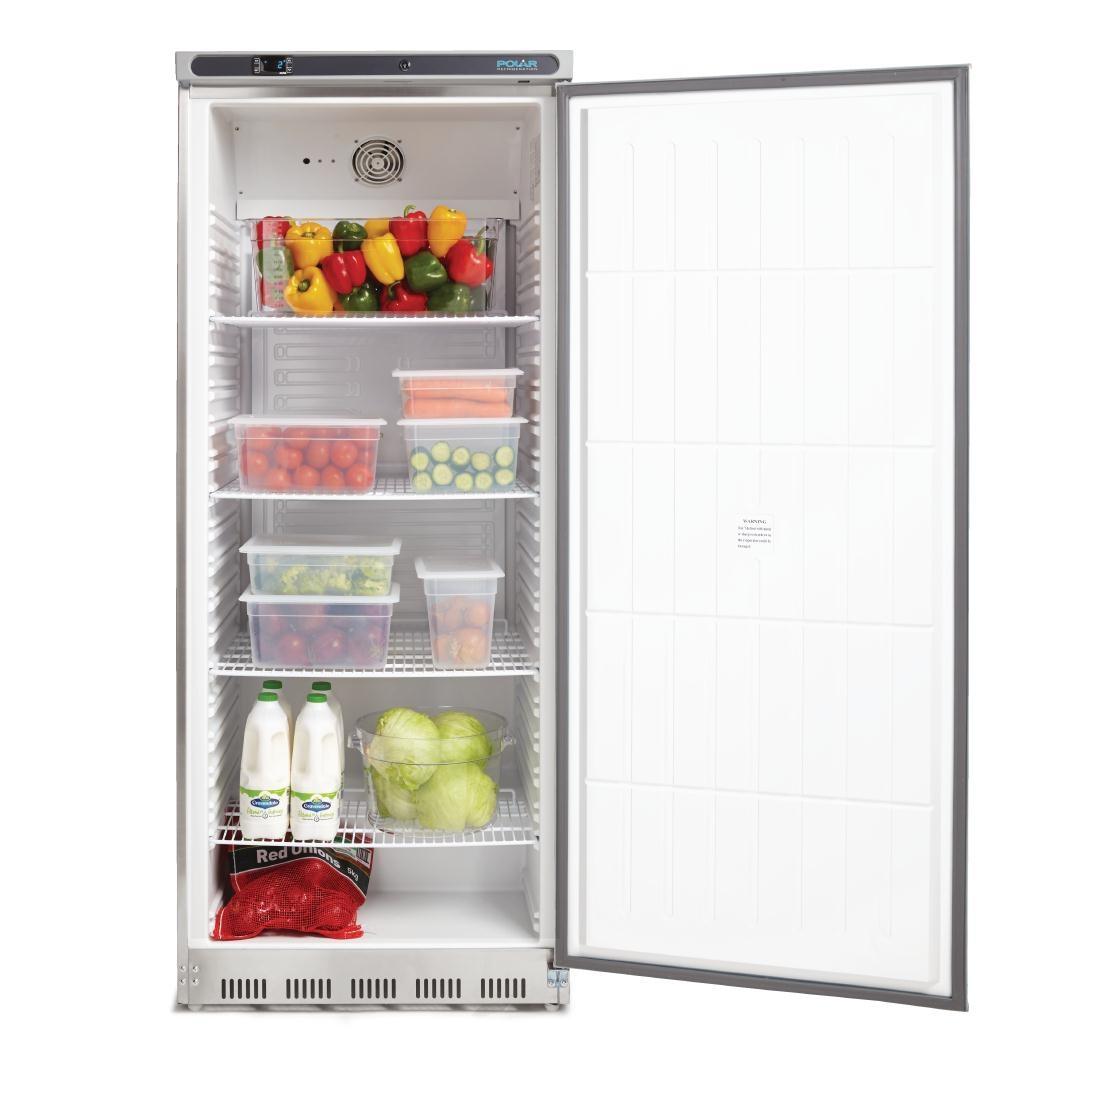 Armario frigorífico de acero inox 1 puerta 600L. Polar